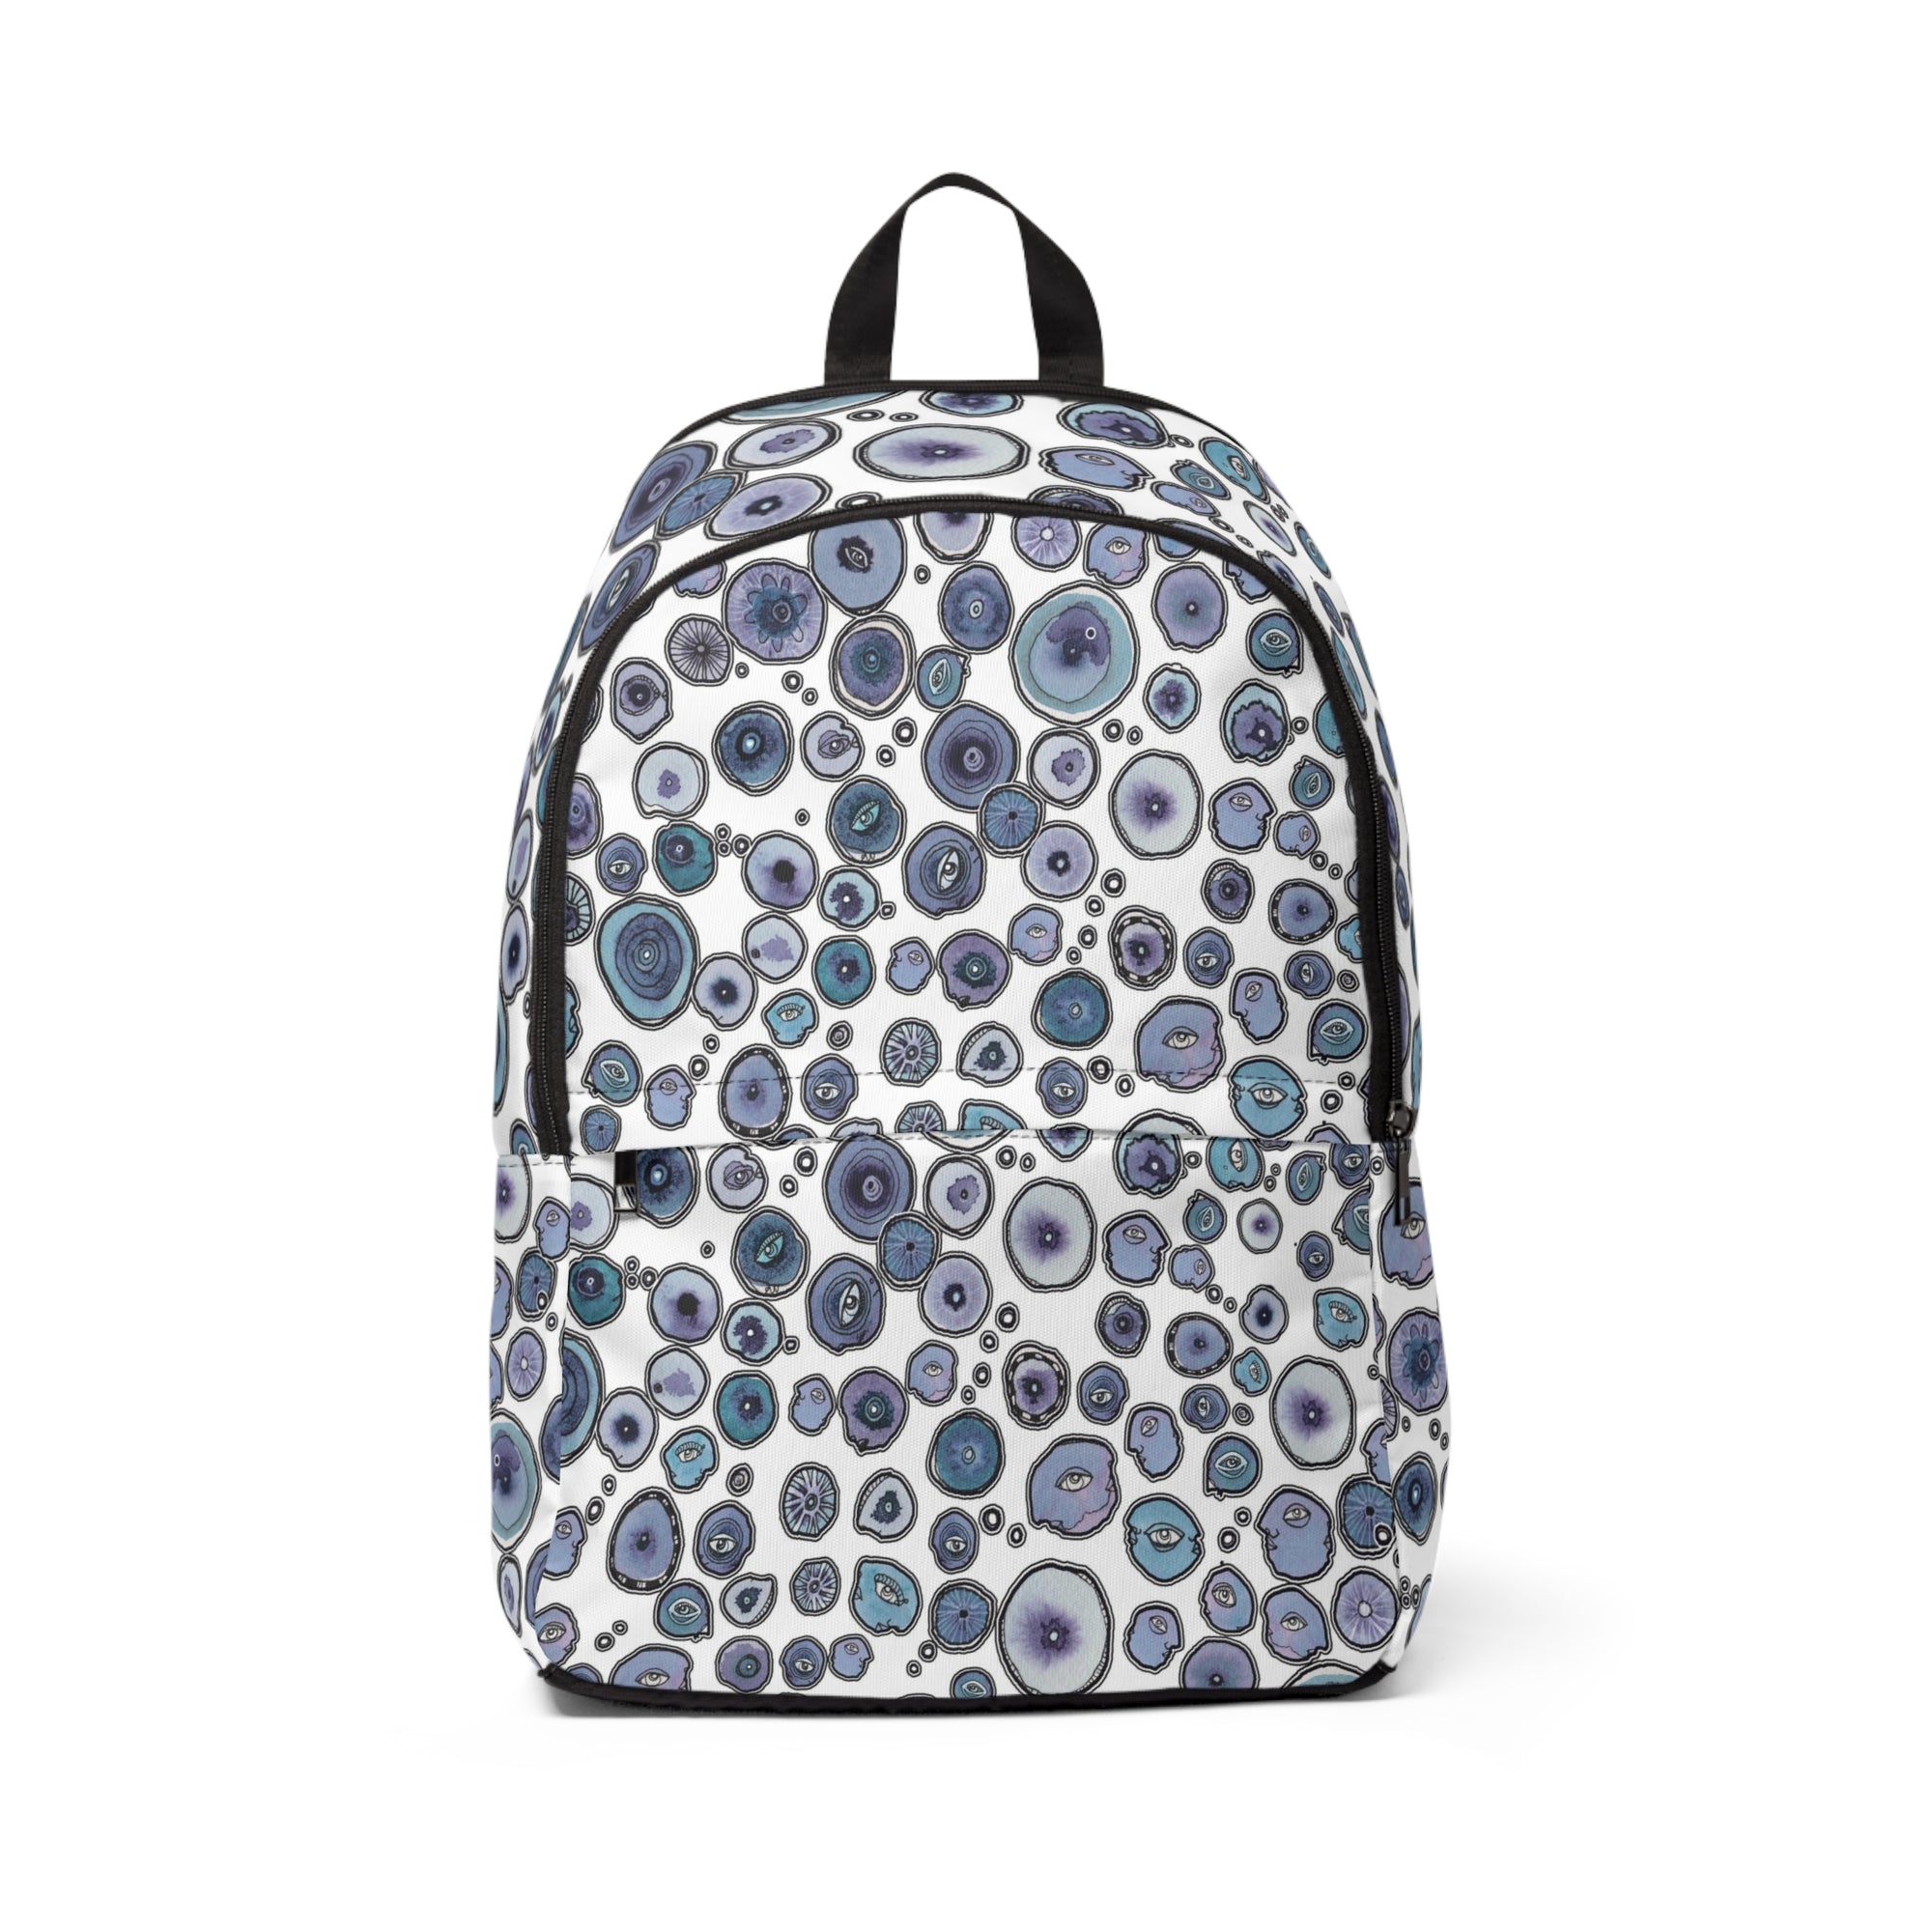 Kids Waterproof Backpack "Blueberry Friends in white"